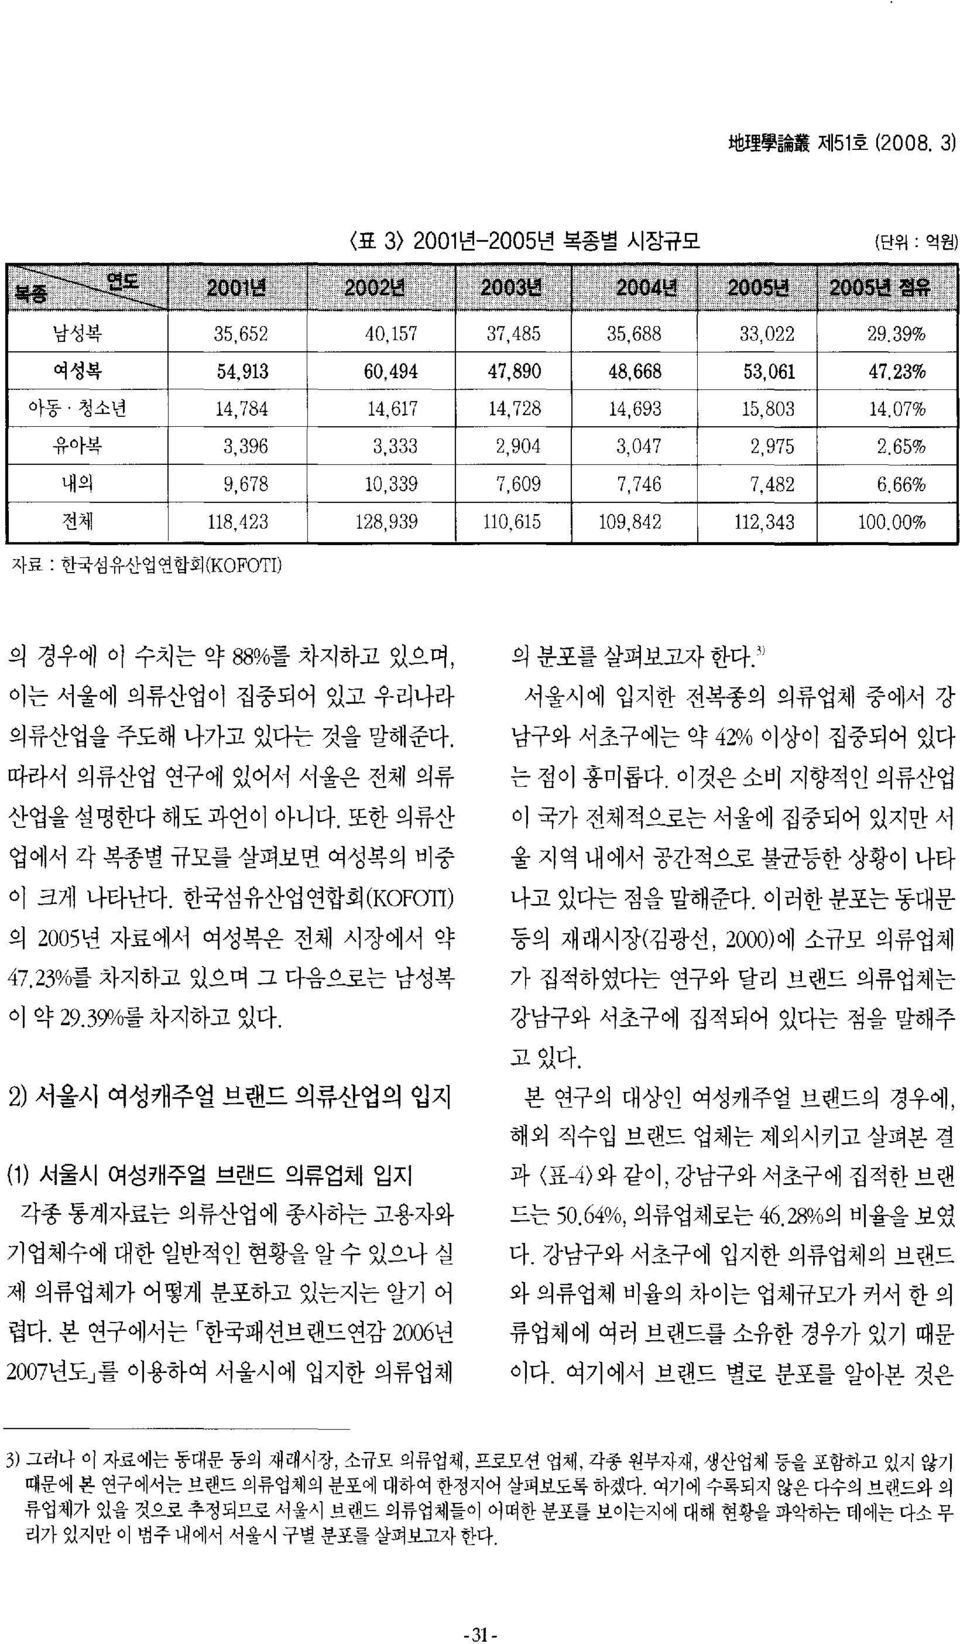 842 112,343 100,00% 자료 : 한국섬유산업연합회 (KOFOT I) 의 경우에 이 수치는 약 88%를 차지하고 있으며, 이는 서울에 의류산업이 집중되어 있고 우리나라 의류산업을 주도해 나가고 있다는 것을 말해준다. 따라서 의류산업 연구에 있어서 서울은 전체 의류 산업을 설명한다 해도 과언이 아니다.